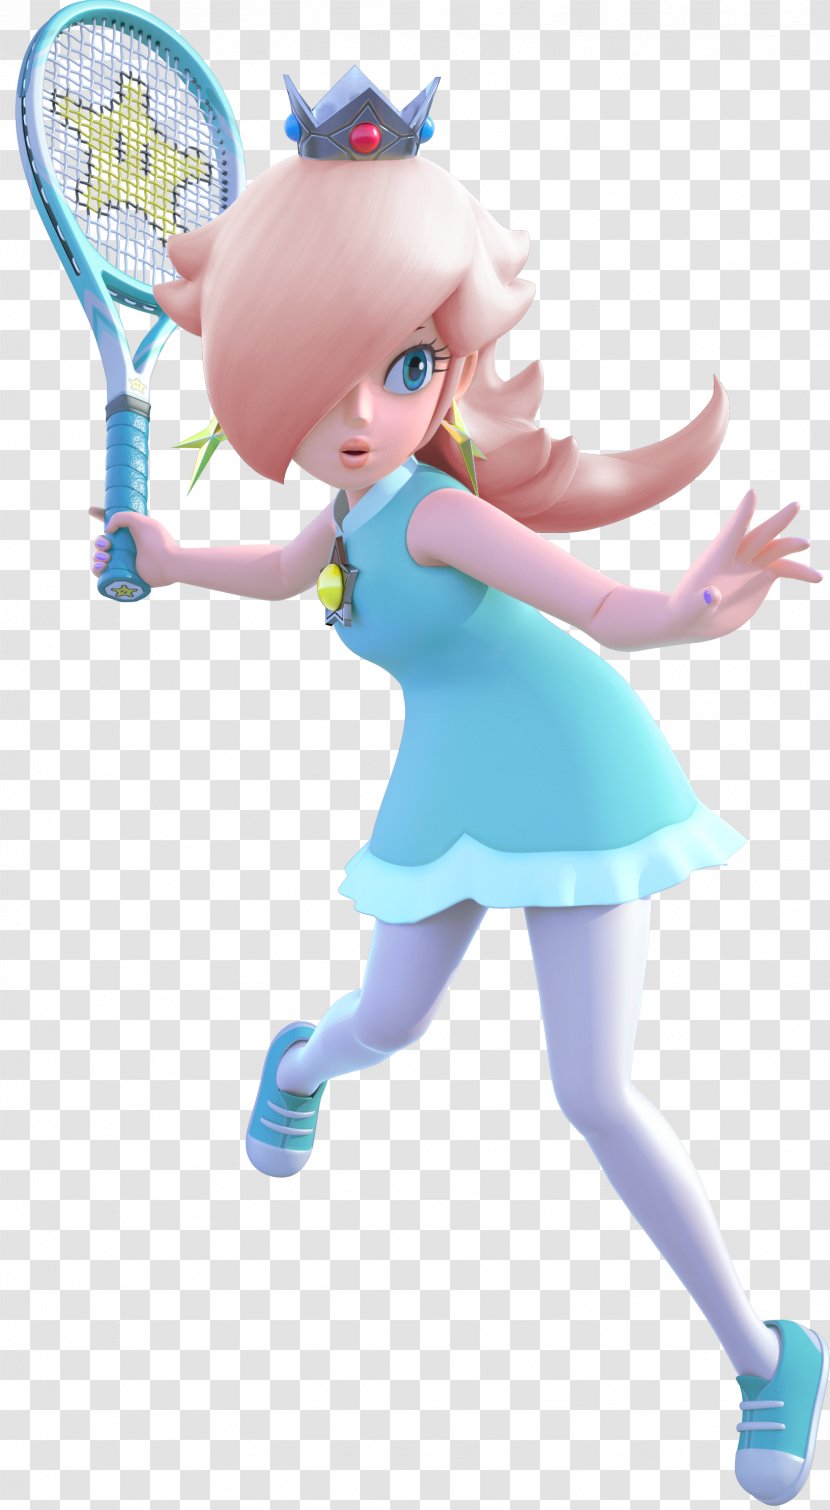 Mario Tennis: Ultra Smash Super Bros. For Nintendo 3DS And Wii U Rosalina Princess Peach Transparent PNG